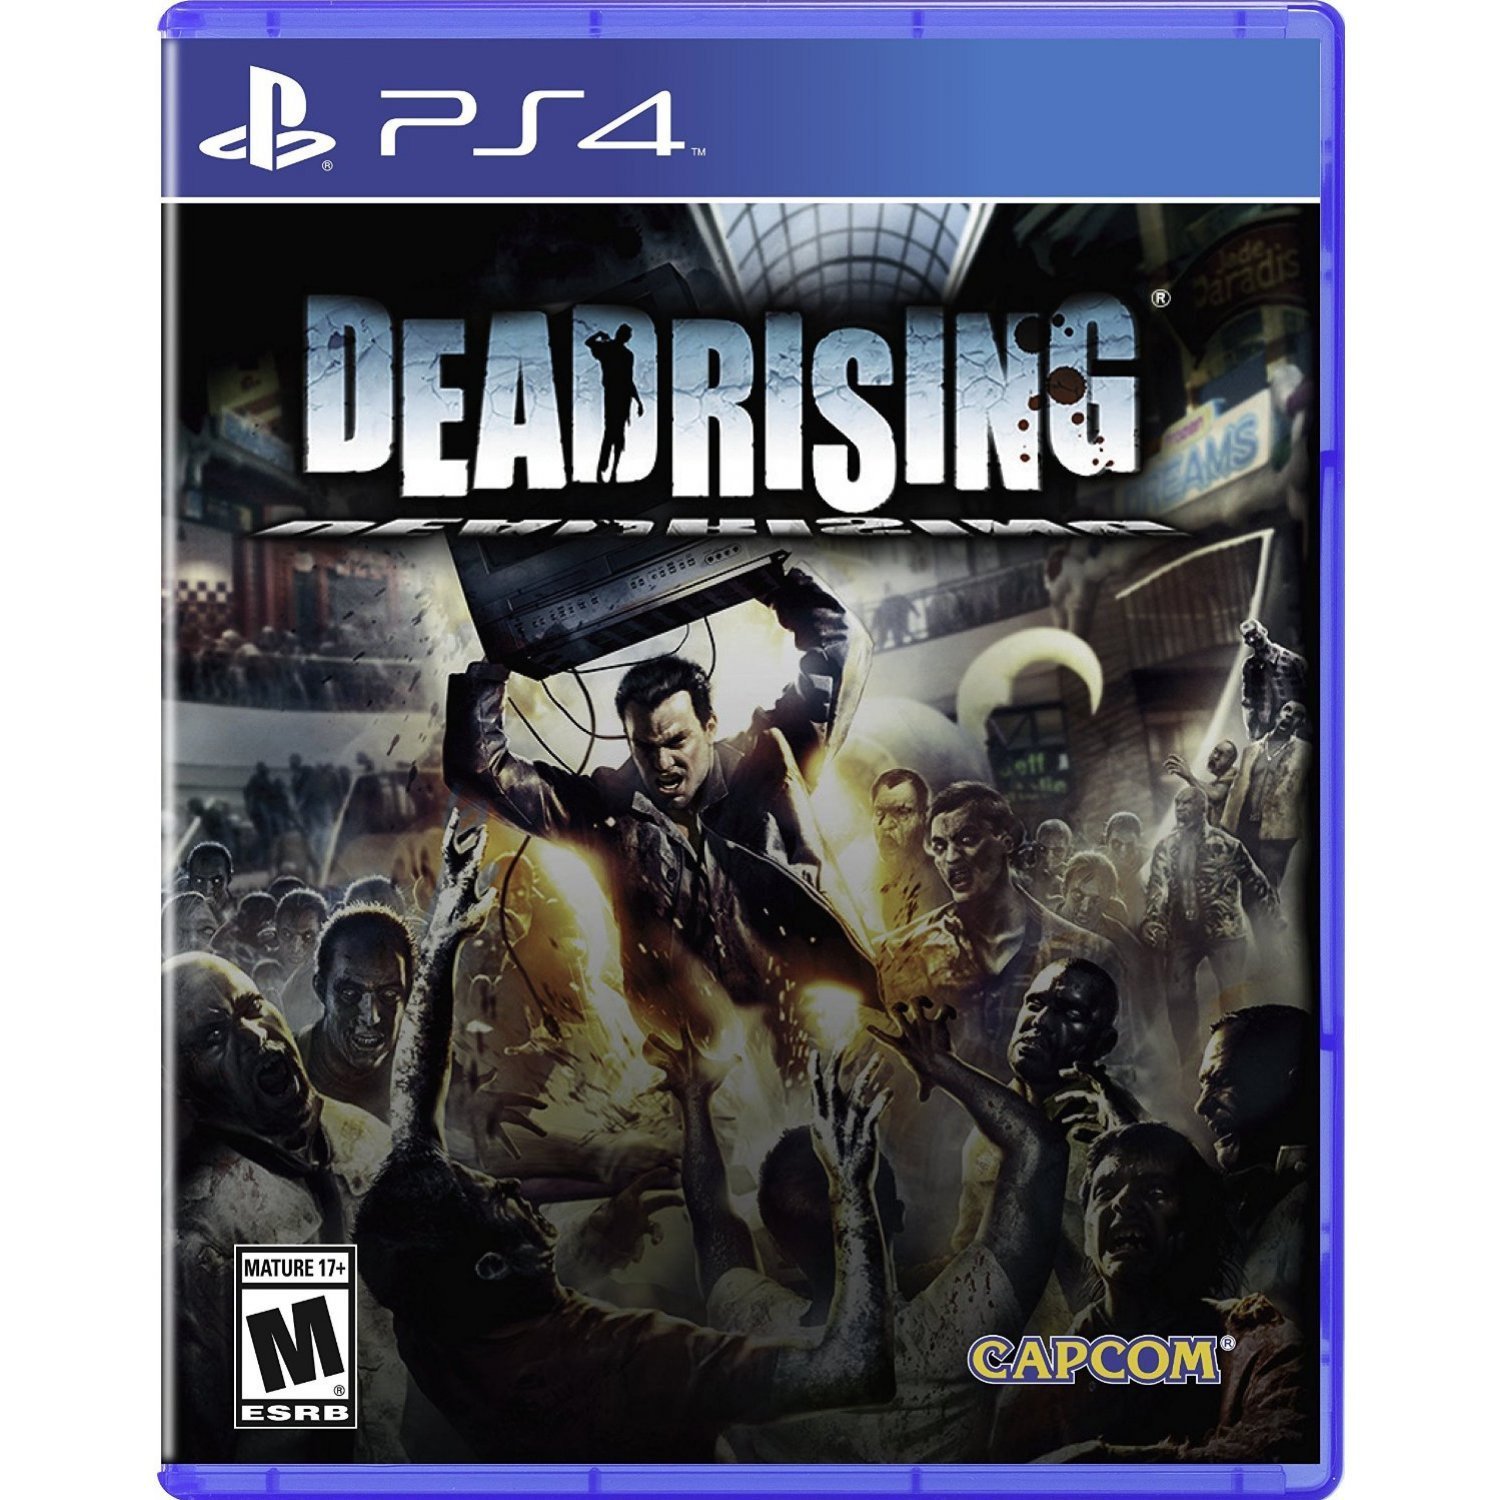 Dead Rising HD (USA) (PS4), Capcom Production Studio 1